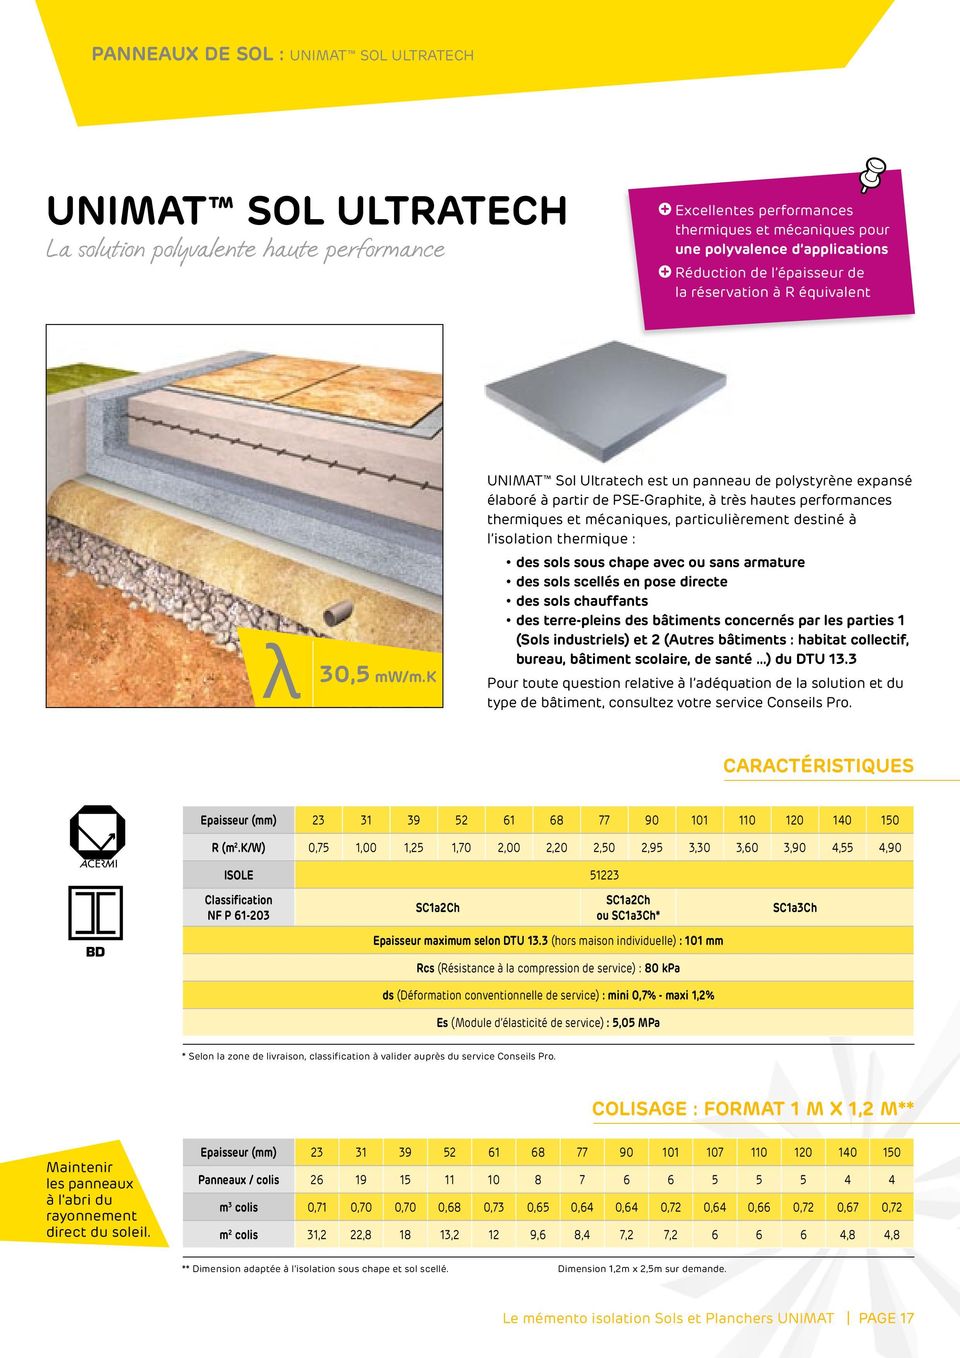 k UNIMAT Sol Ultratech est un panneau de polystyrène expansé élaboré à partir de PSE-Graphite, à très hautes performances thermiques et mécaniques, particulièrement destiné à l isolation thermique :